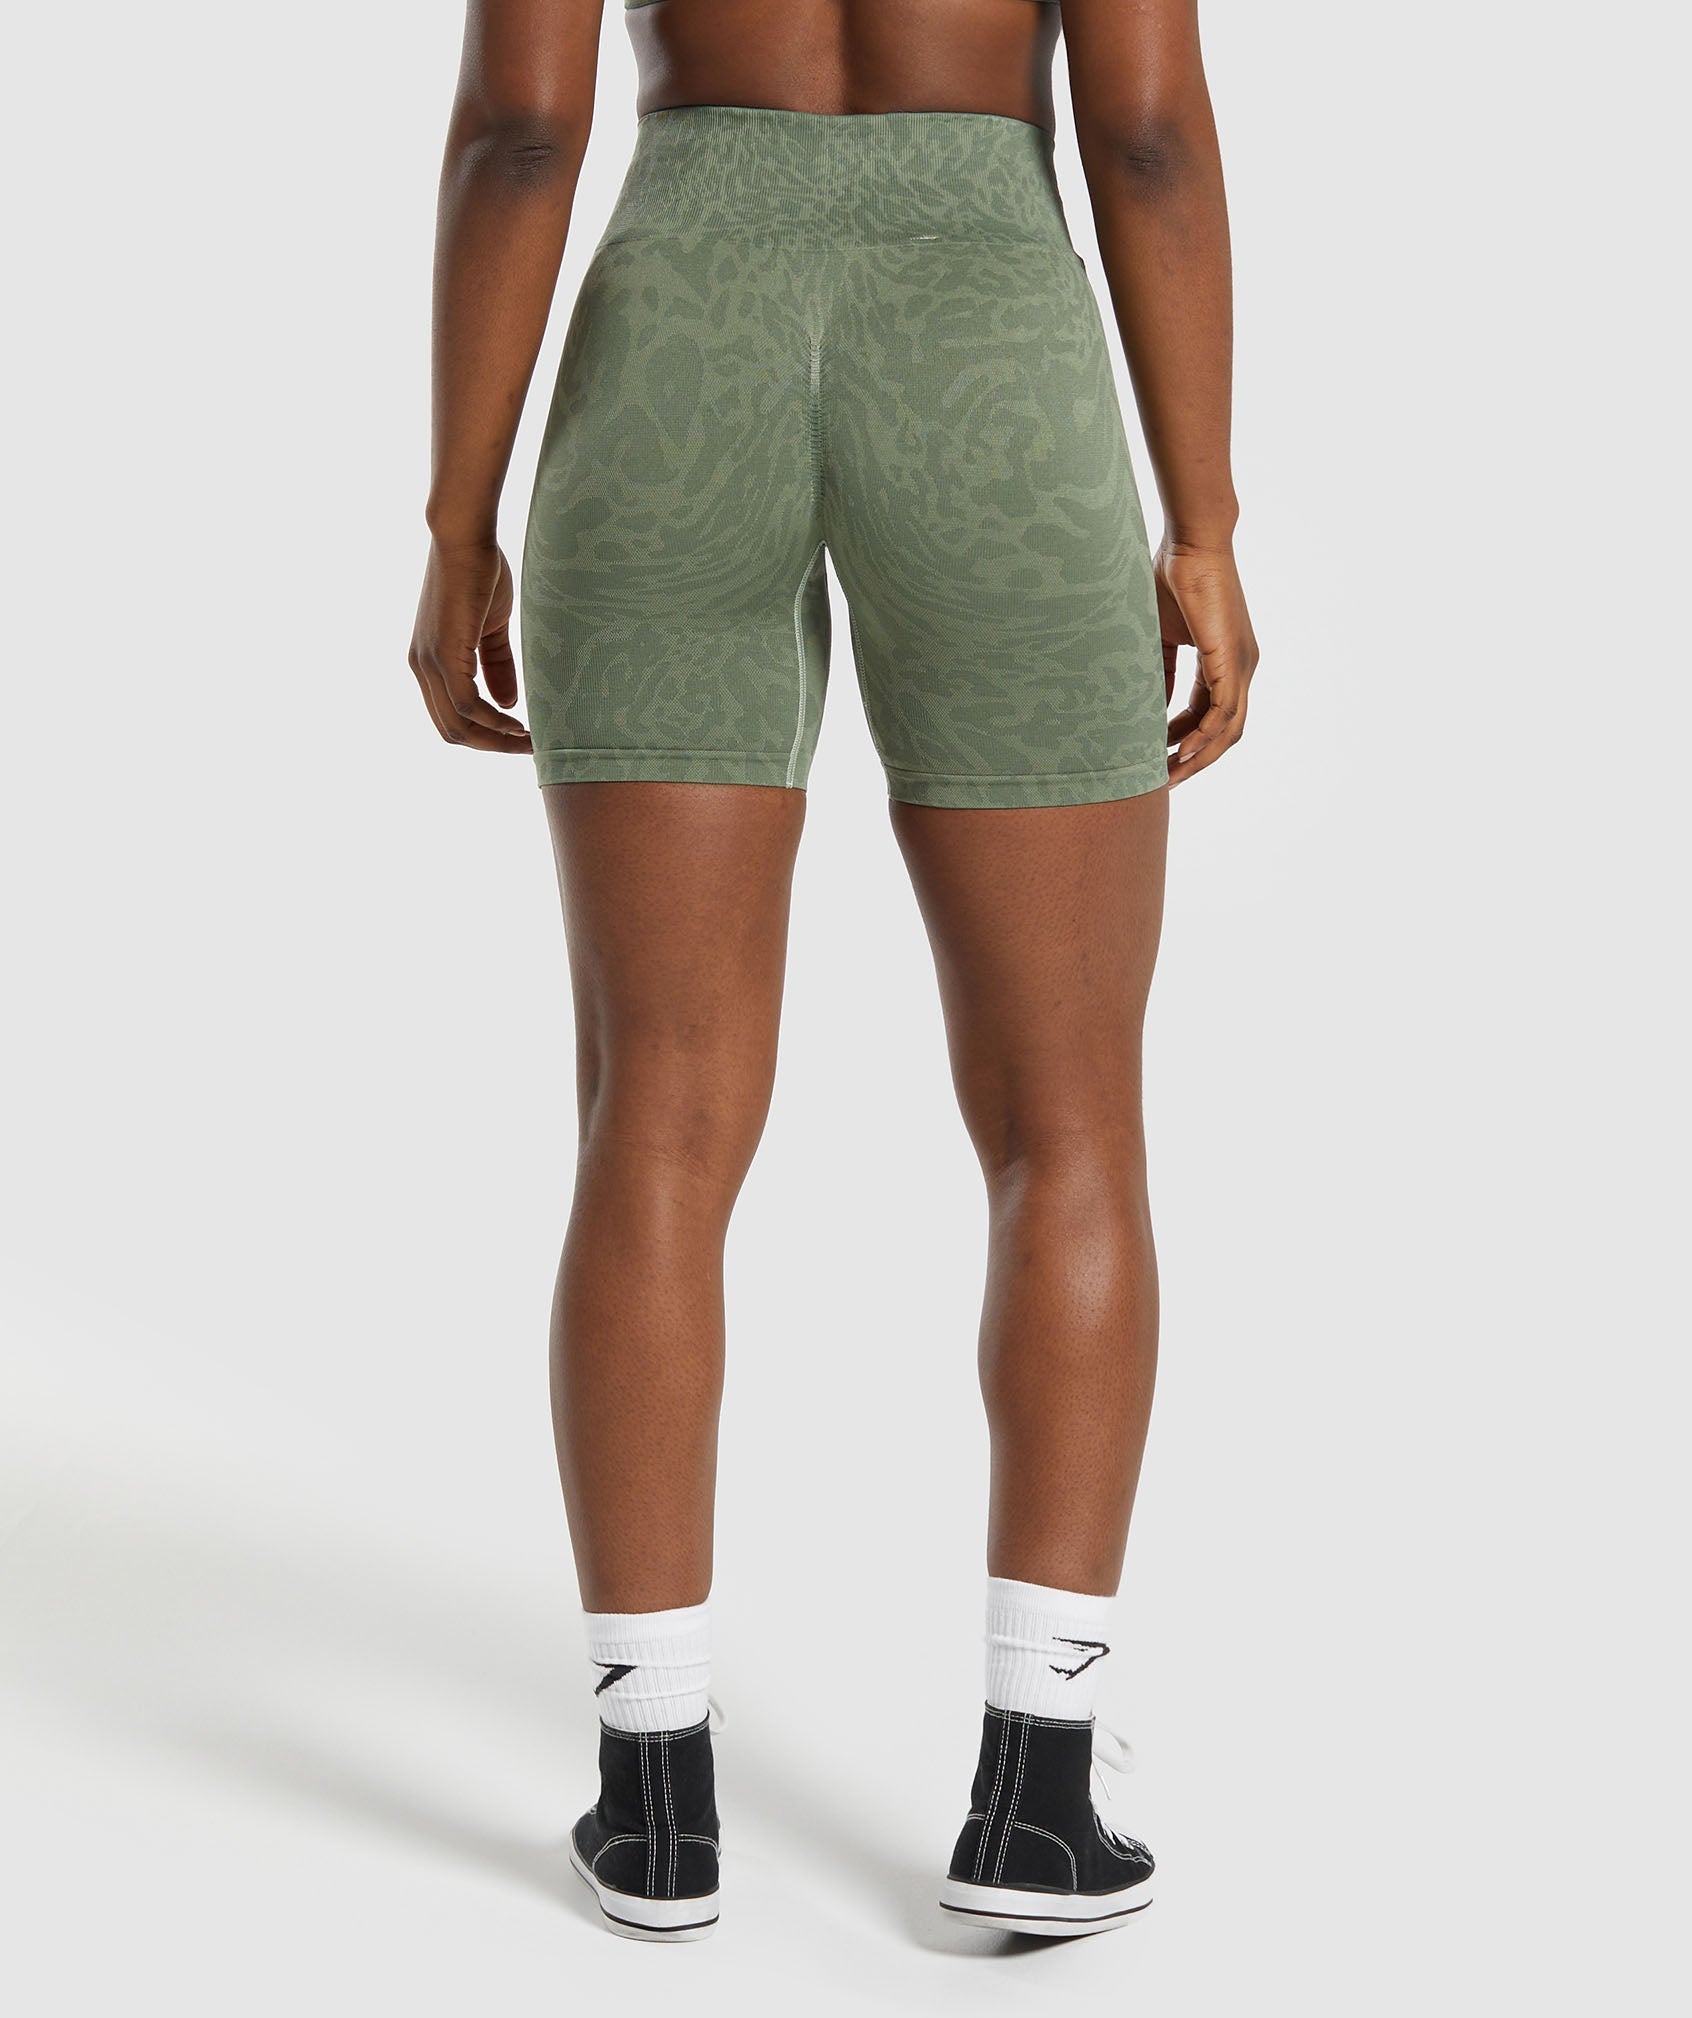 Gymshark ombre shorts - Gem